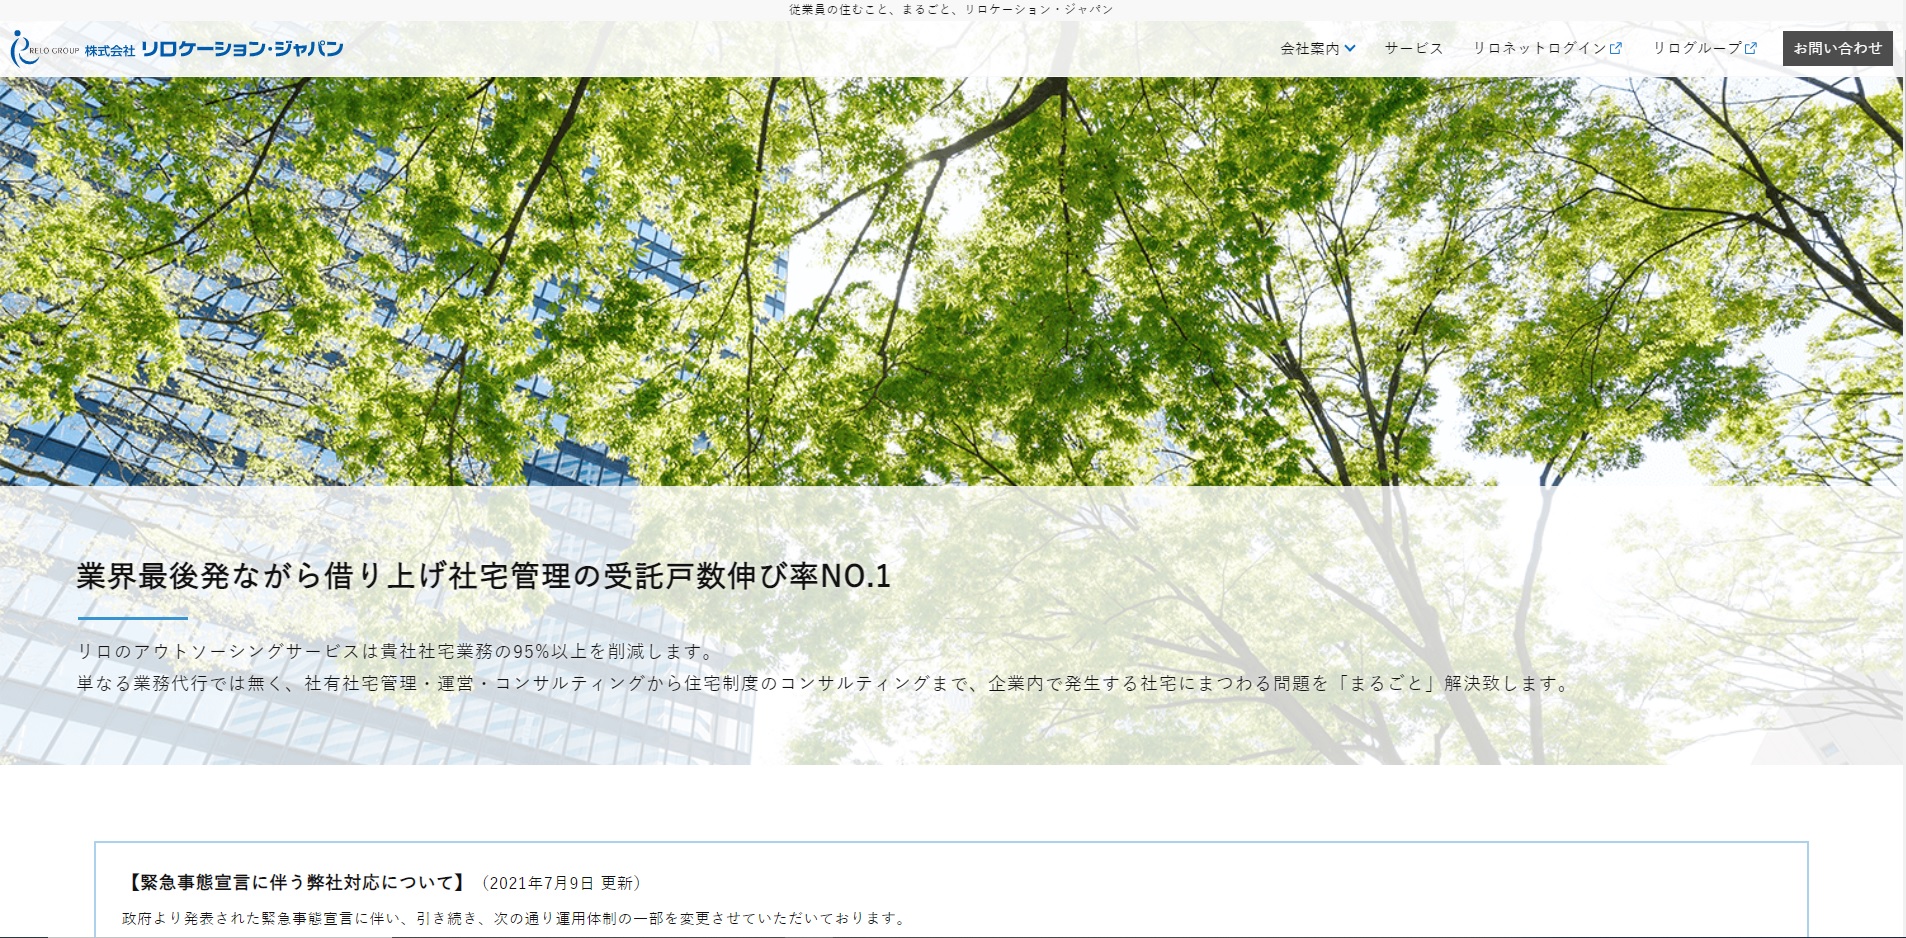 リロケーション・ジャパンの公式サイト画像